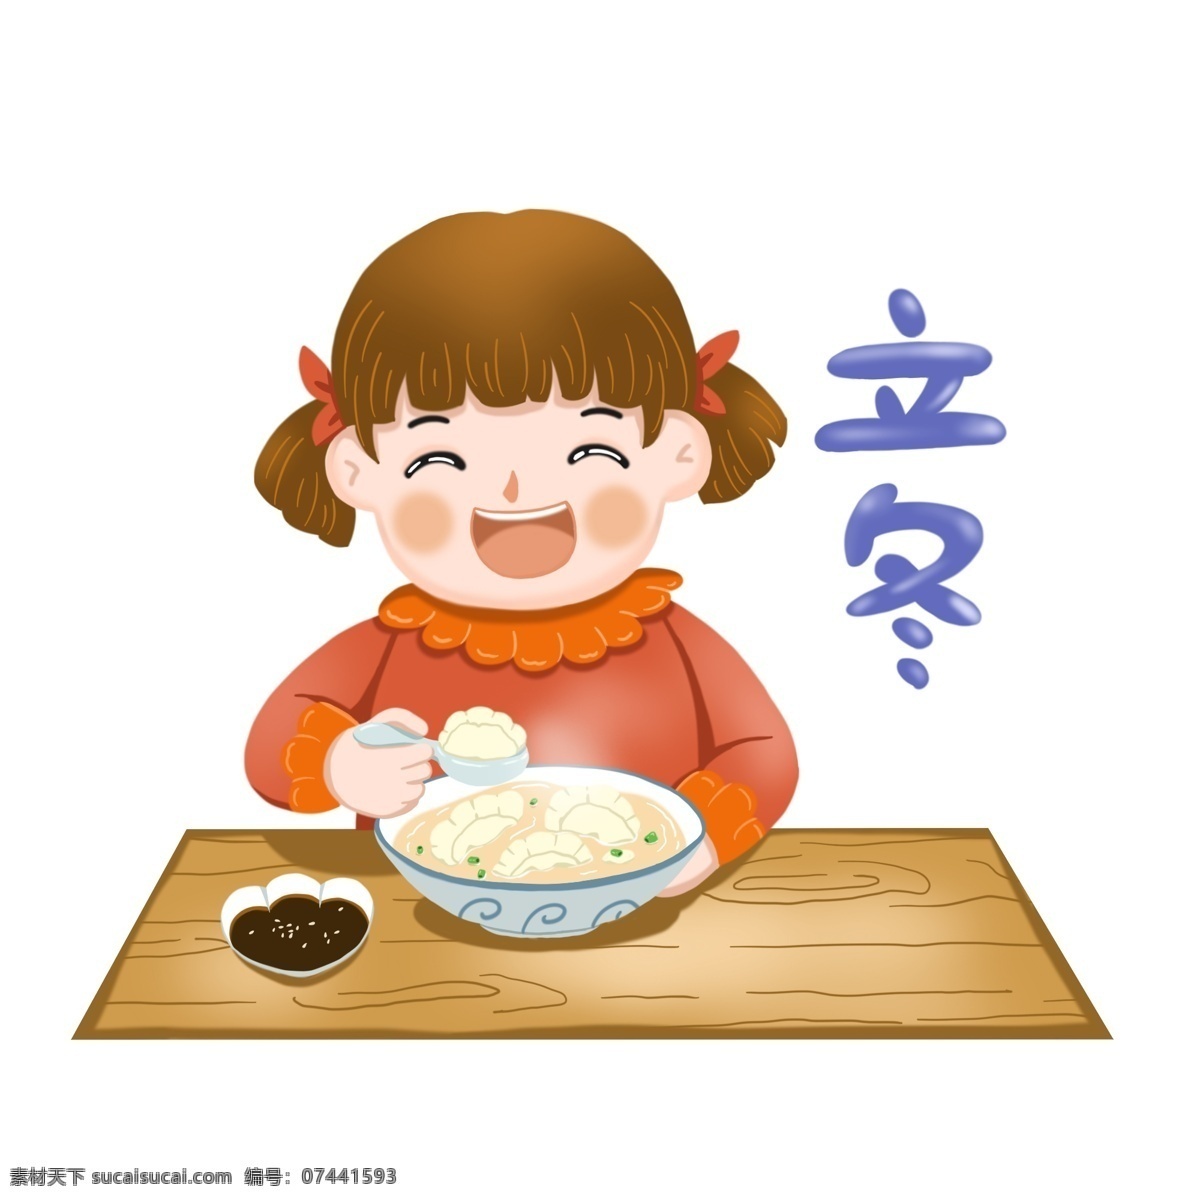 立冬 吃 饺子 可爱 卡通 插画 免 抠 图 冬至 吃饺子 可爱卡通 碗 食物 免抠图 小女孩 装饰图案